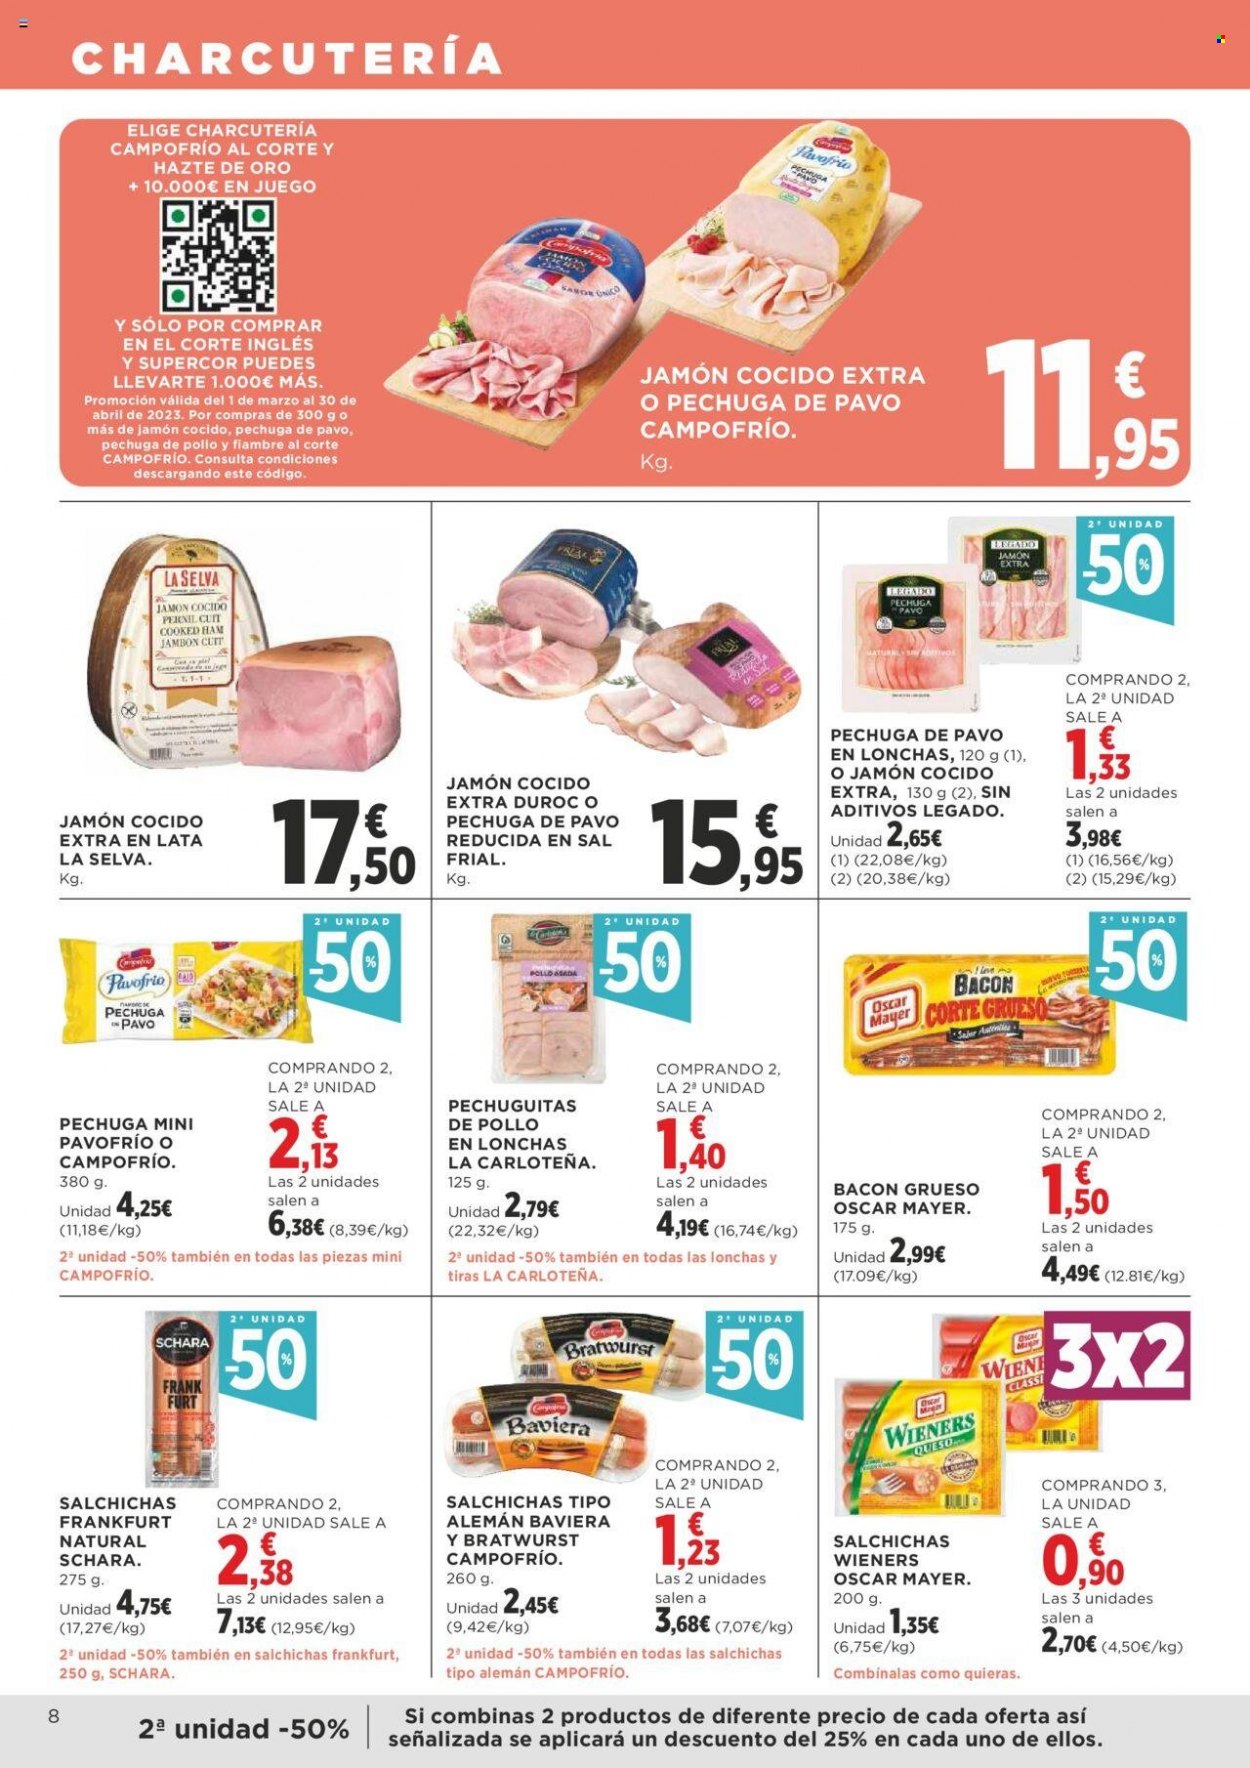 thumbnail - Folleto actual Supercor supermercados - 23/03/23 - 04/04/23 - Ventas - pechuga de pavo, Campofrío, bacón, jamón cocido, fiambre. Página 8.